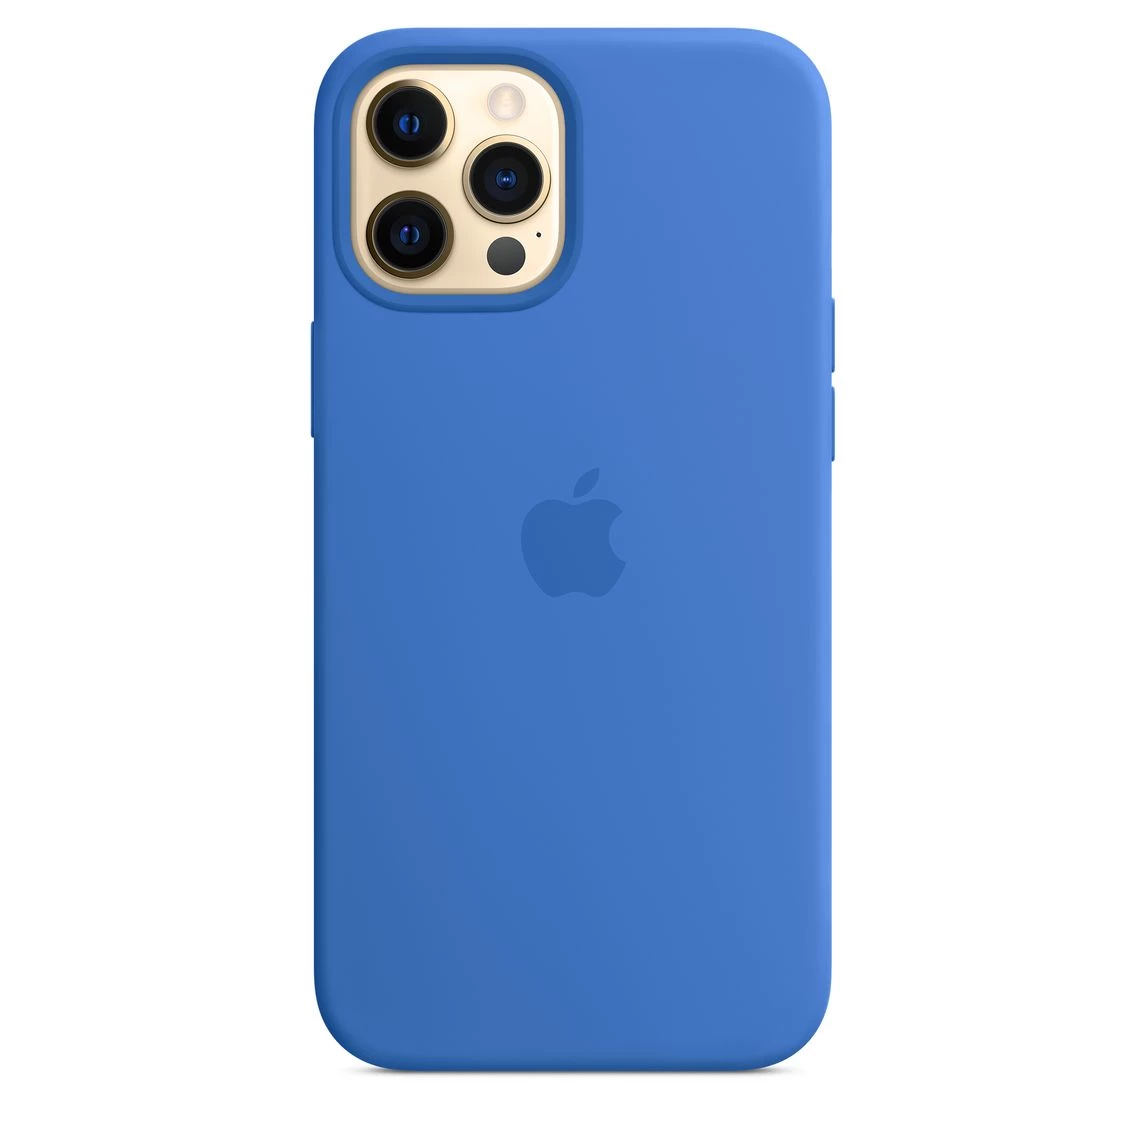 iPhone 12 Pro Max Silicone Case Lux Copy - Capri Blue (MK043)